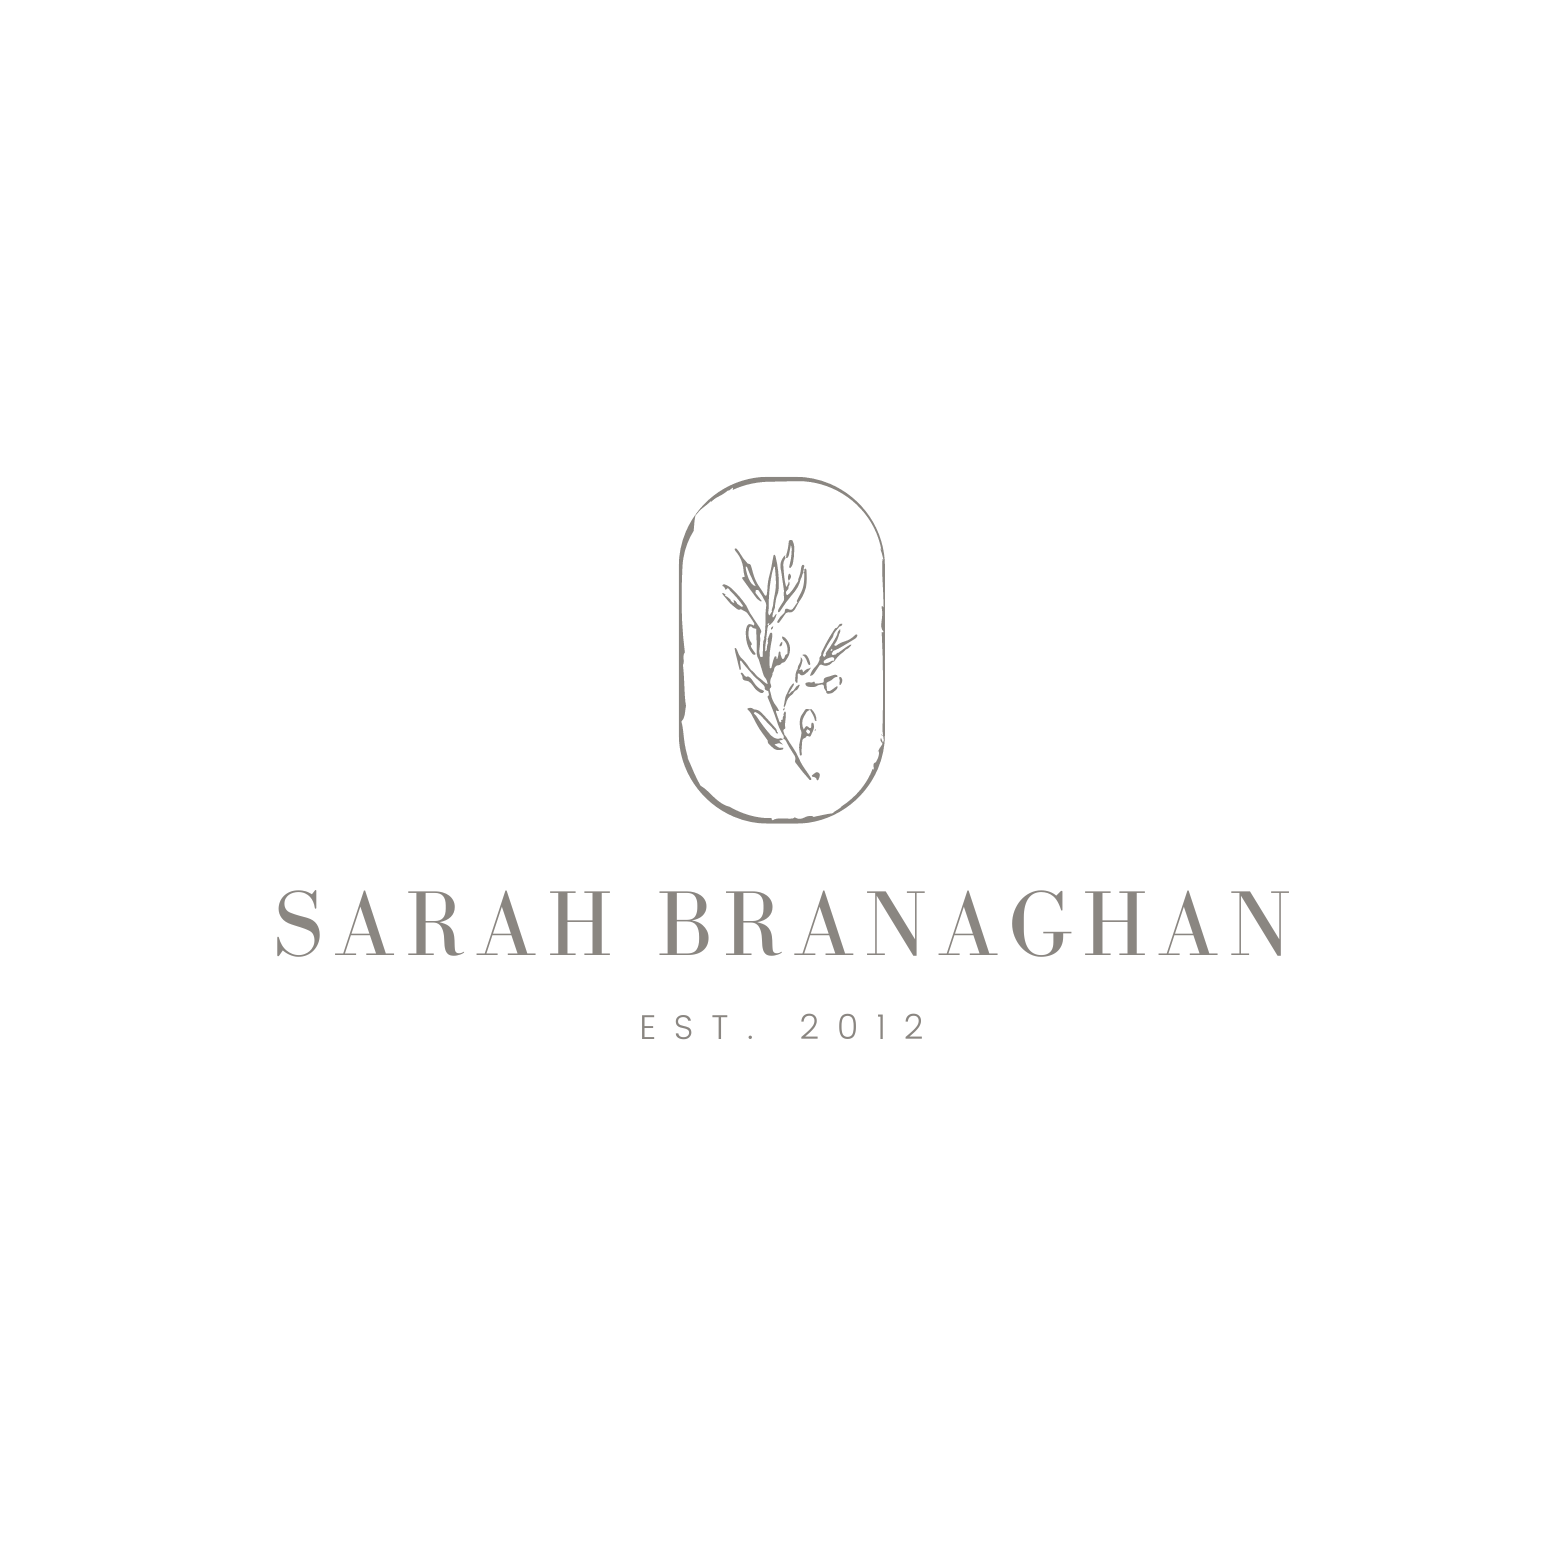 Sarah Branaghan Photography